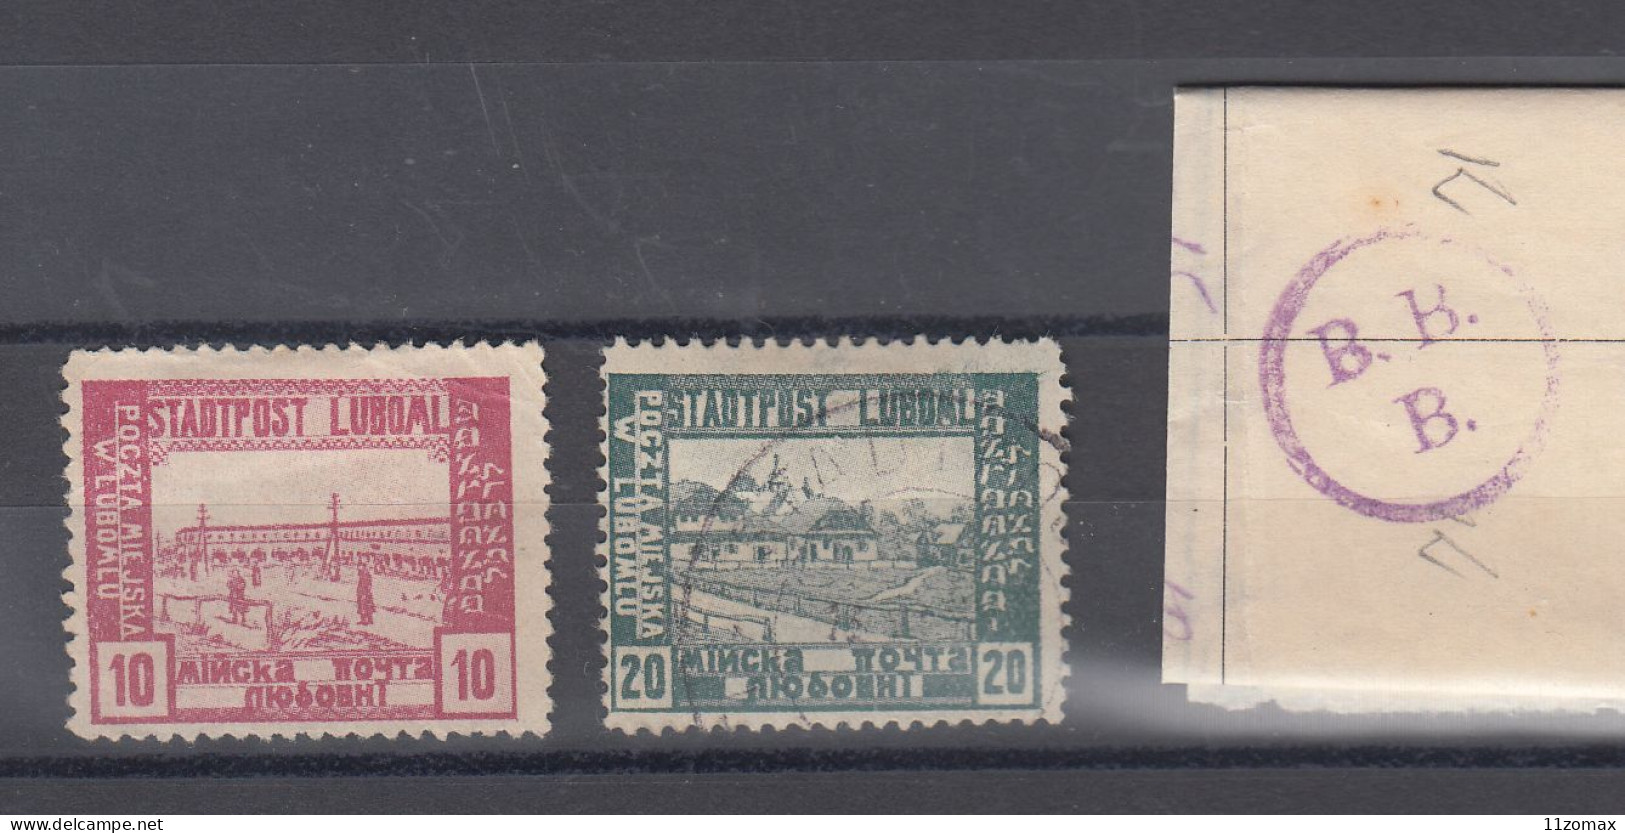 LUBOML LYUBOML Ukraina Now 1918. Lot Of 2 Stamps - VIPauction001 - Ongebruikt